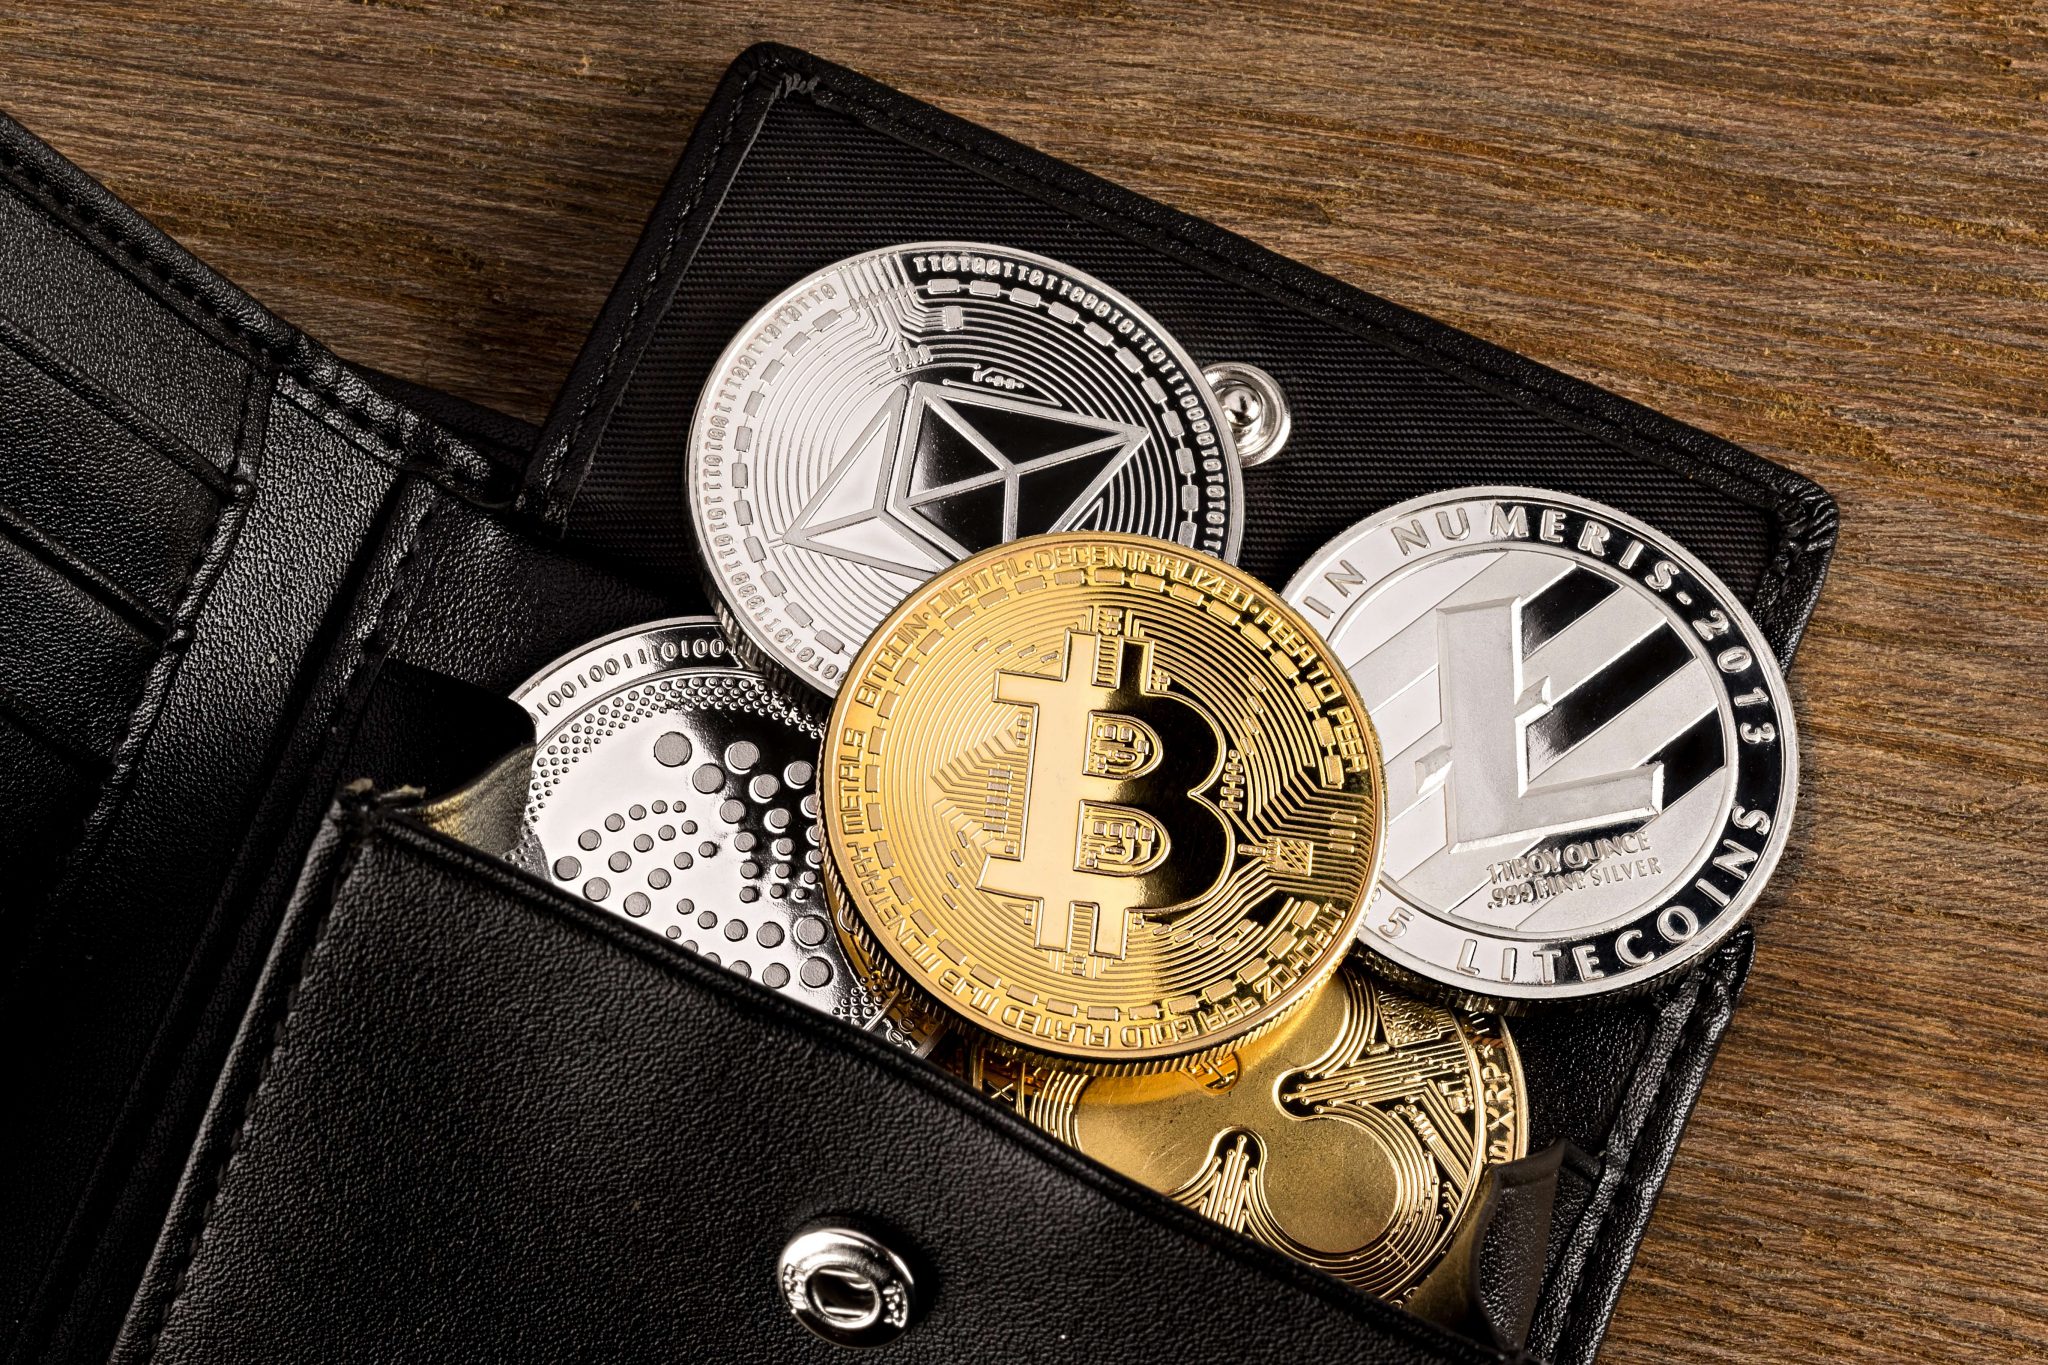 uk based crypto wallet